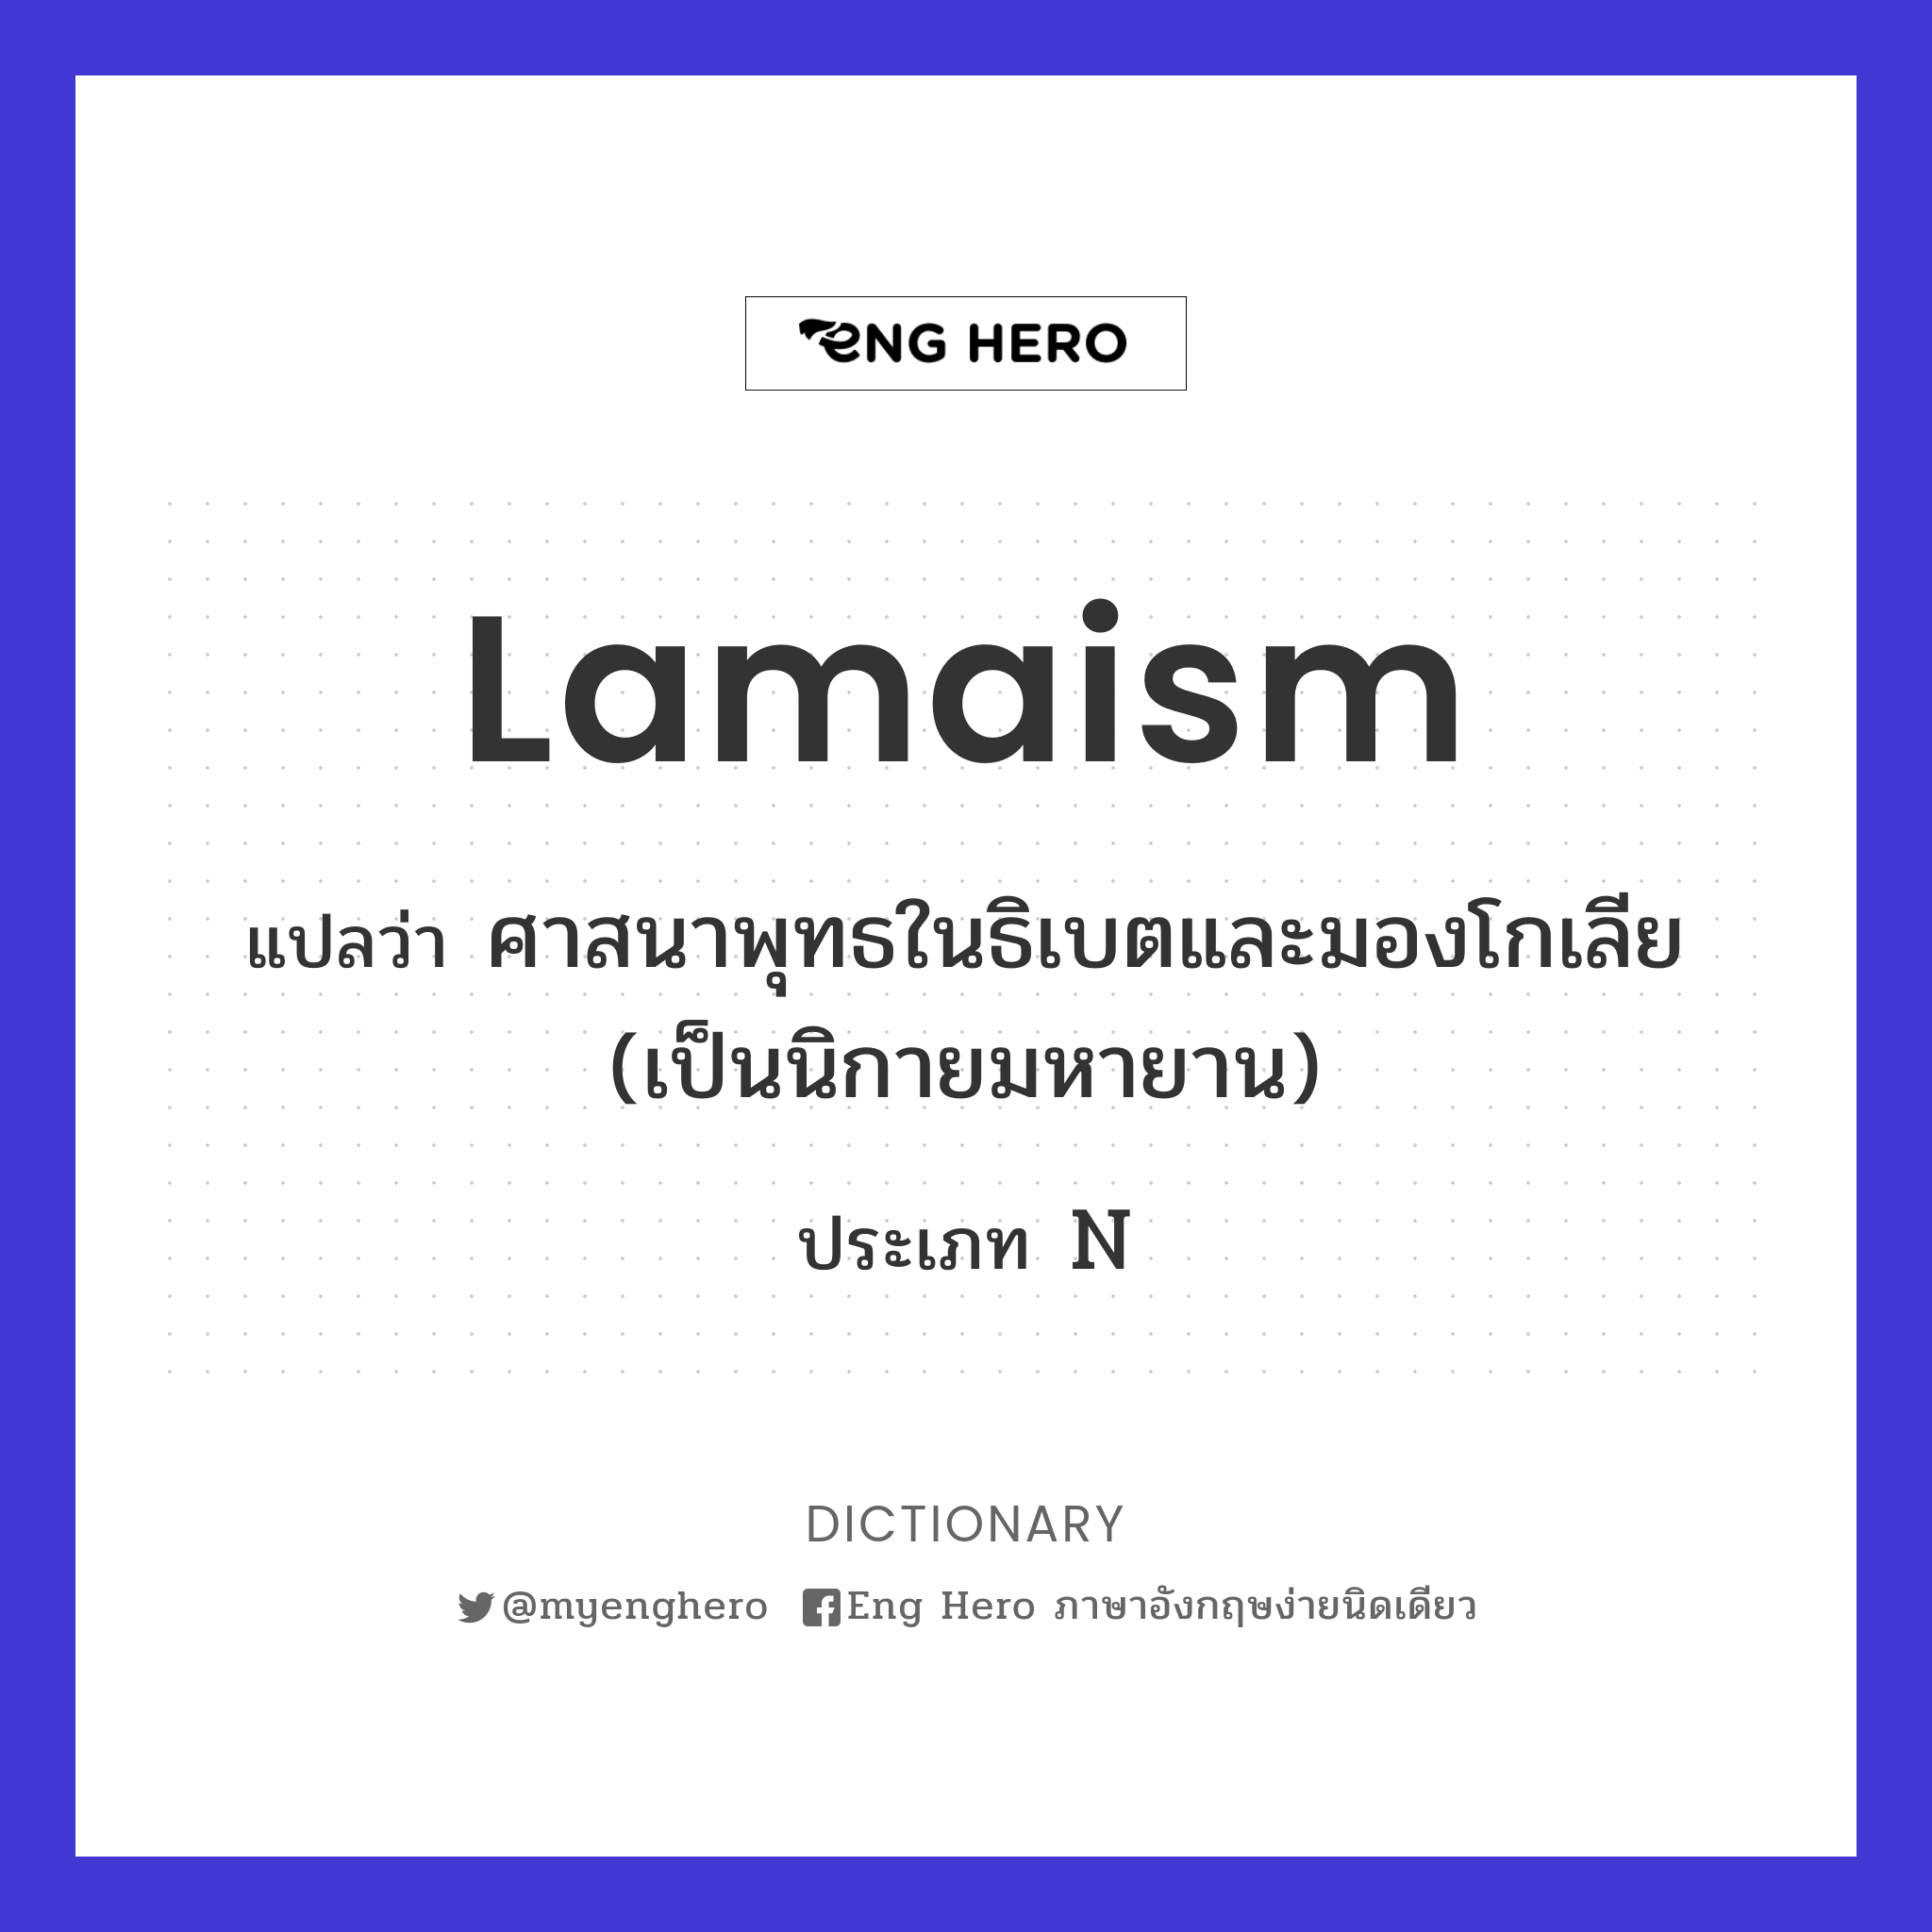 Lamaism